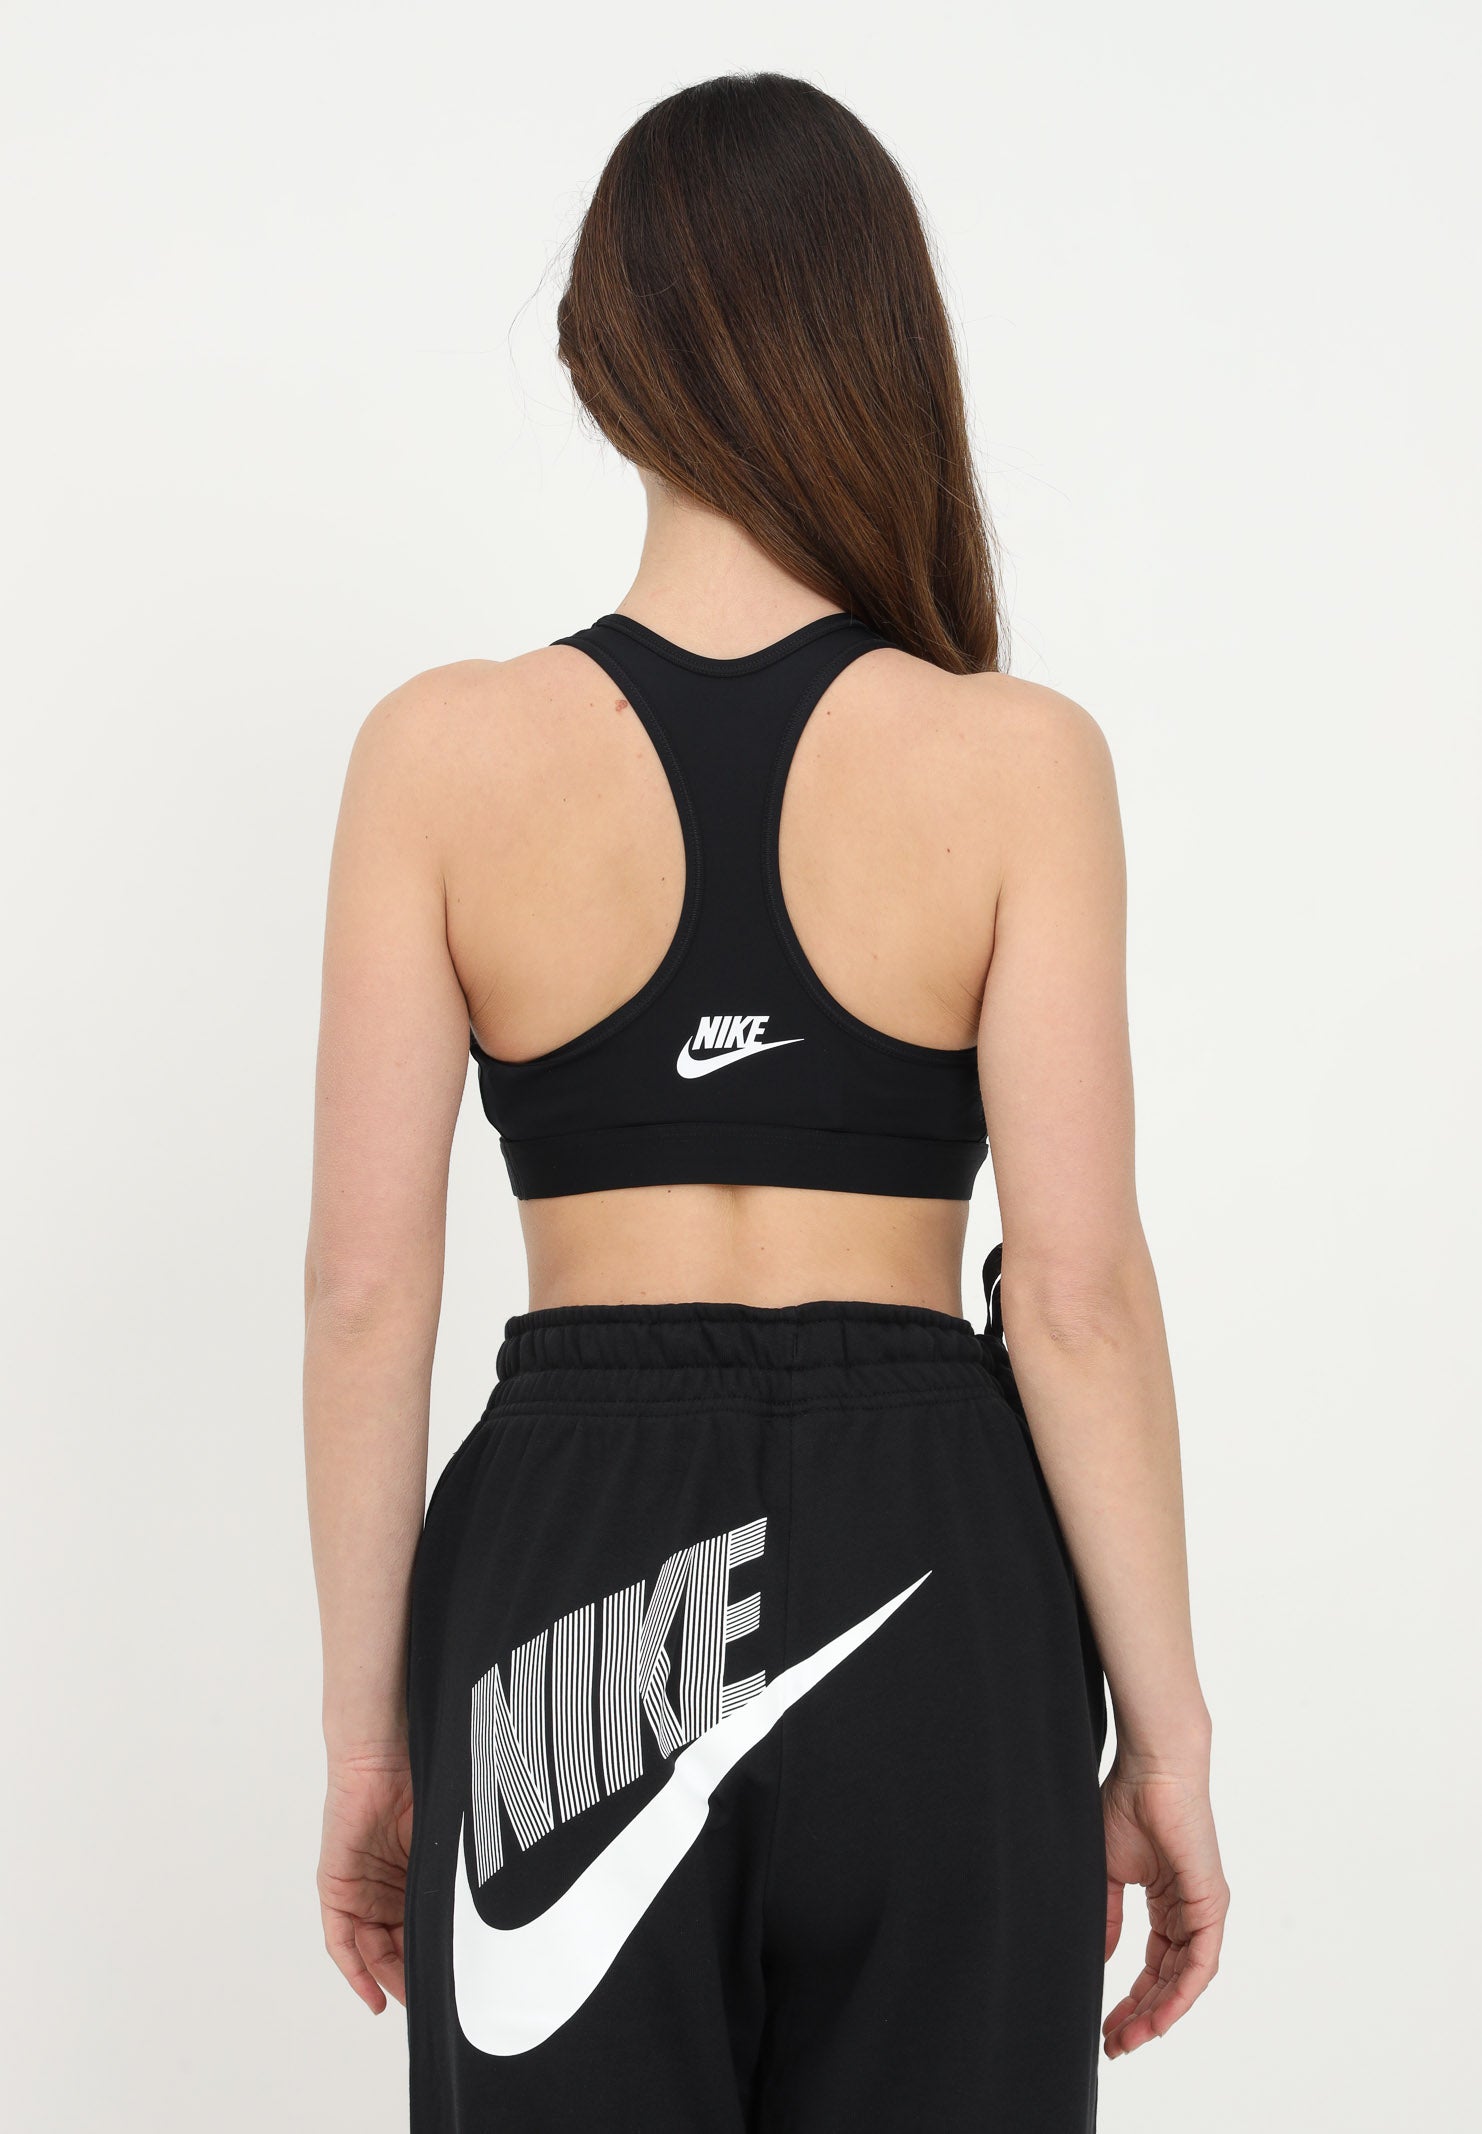 Nike tops